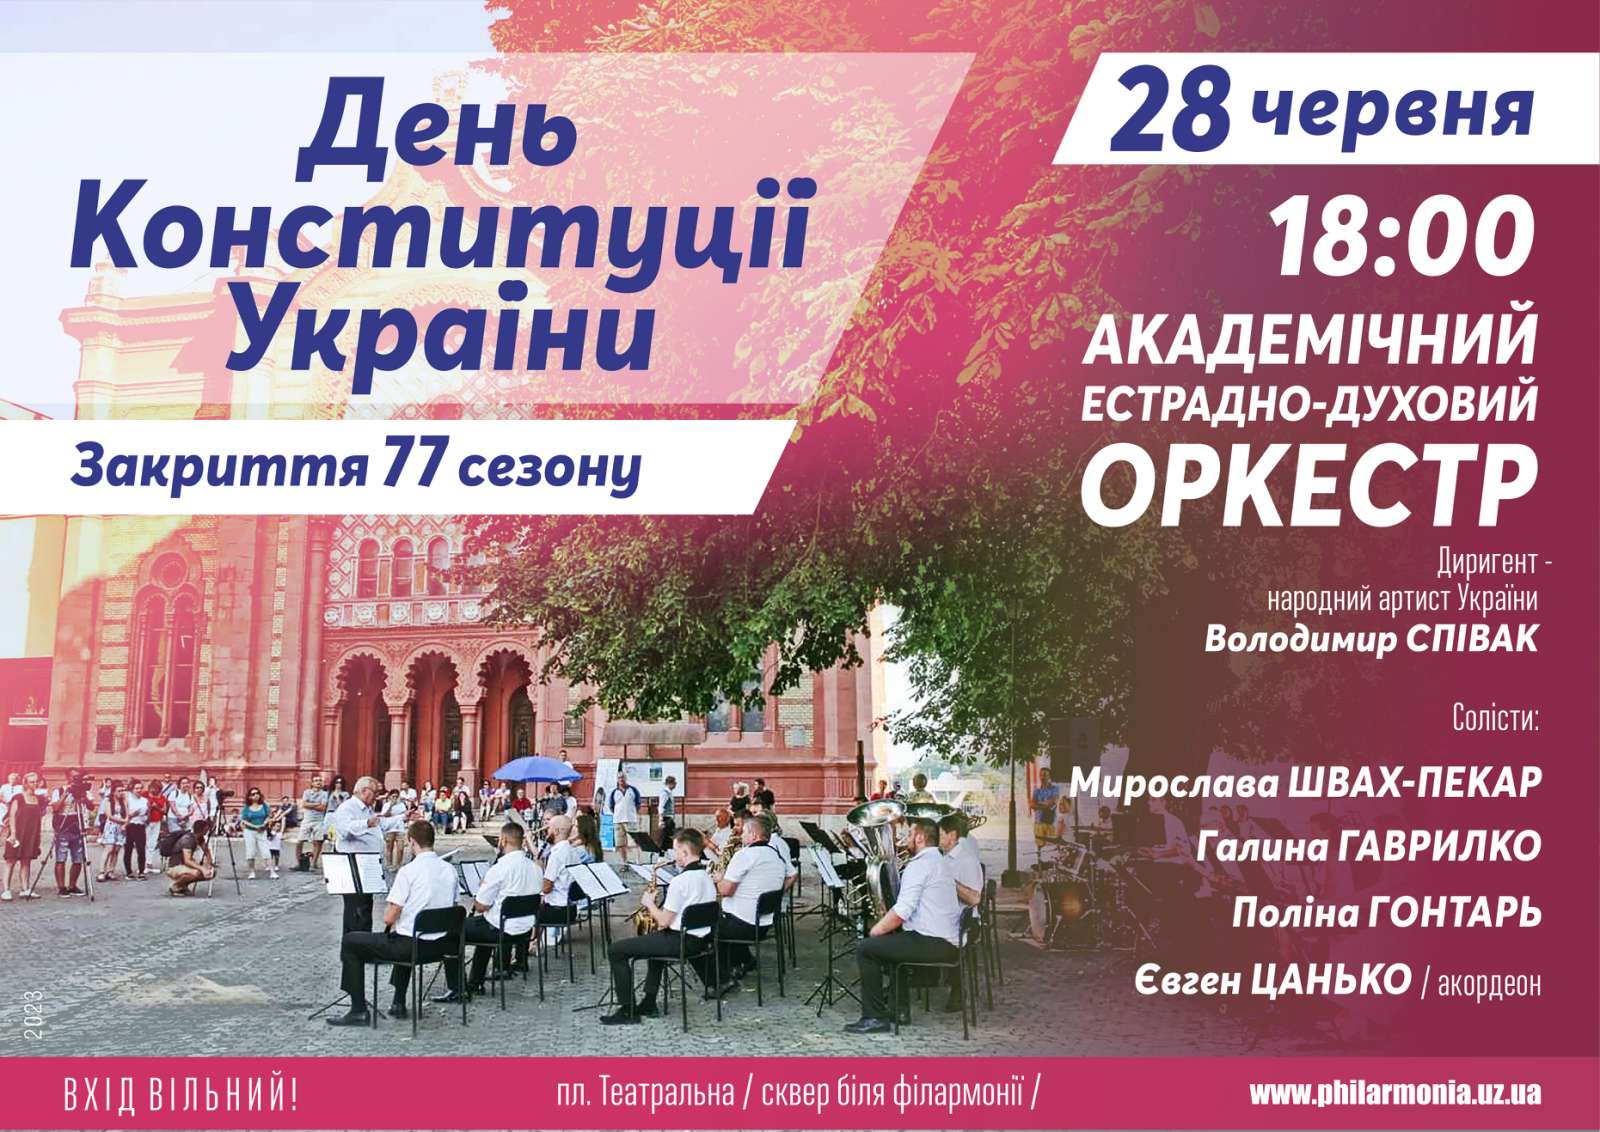 До Дня Конституції в Ужгороді відбудеться концерт під відкритим небом академічного естрадно-духового оркестру